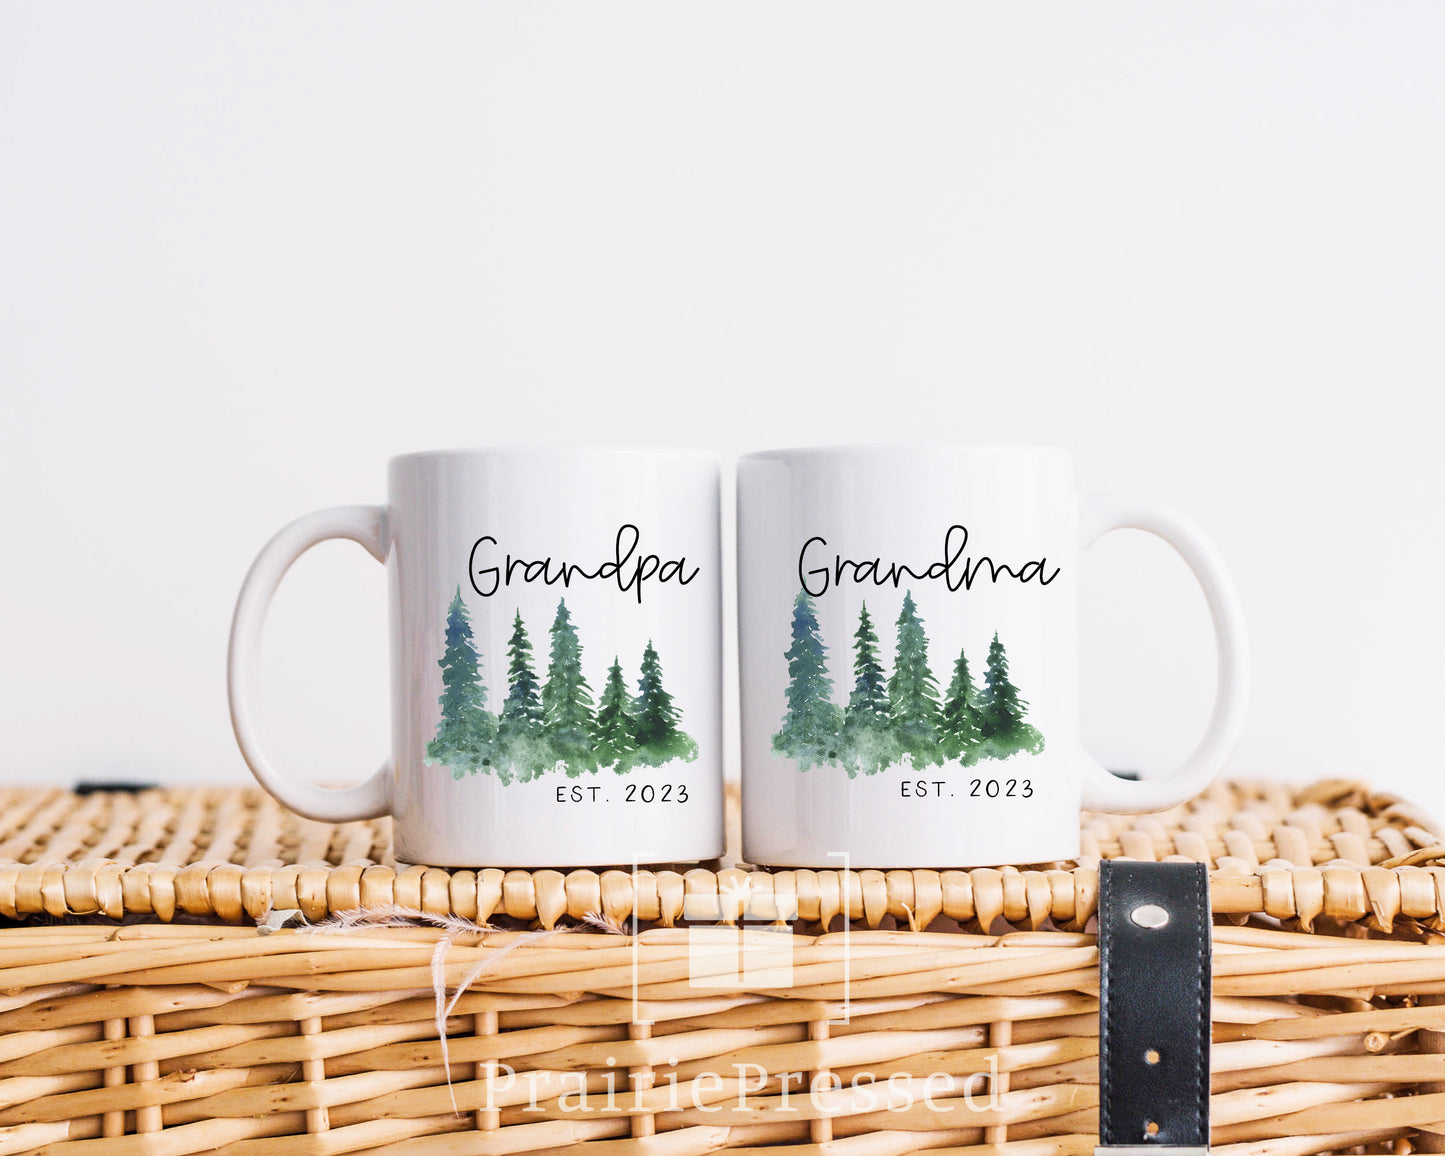 2 Ceramic Mug Set - Grandpa and Grandma